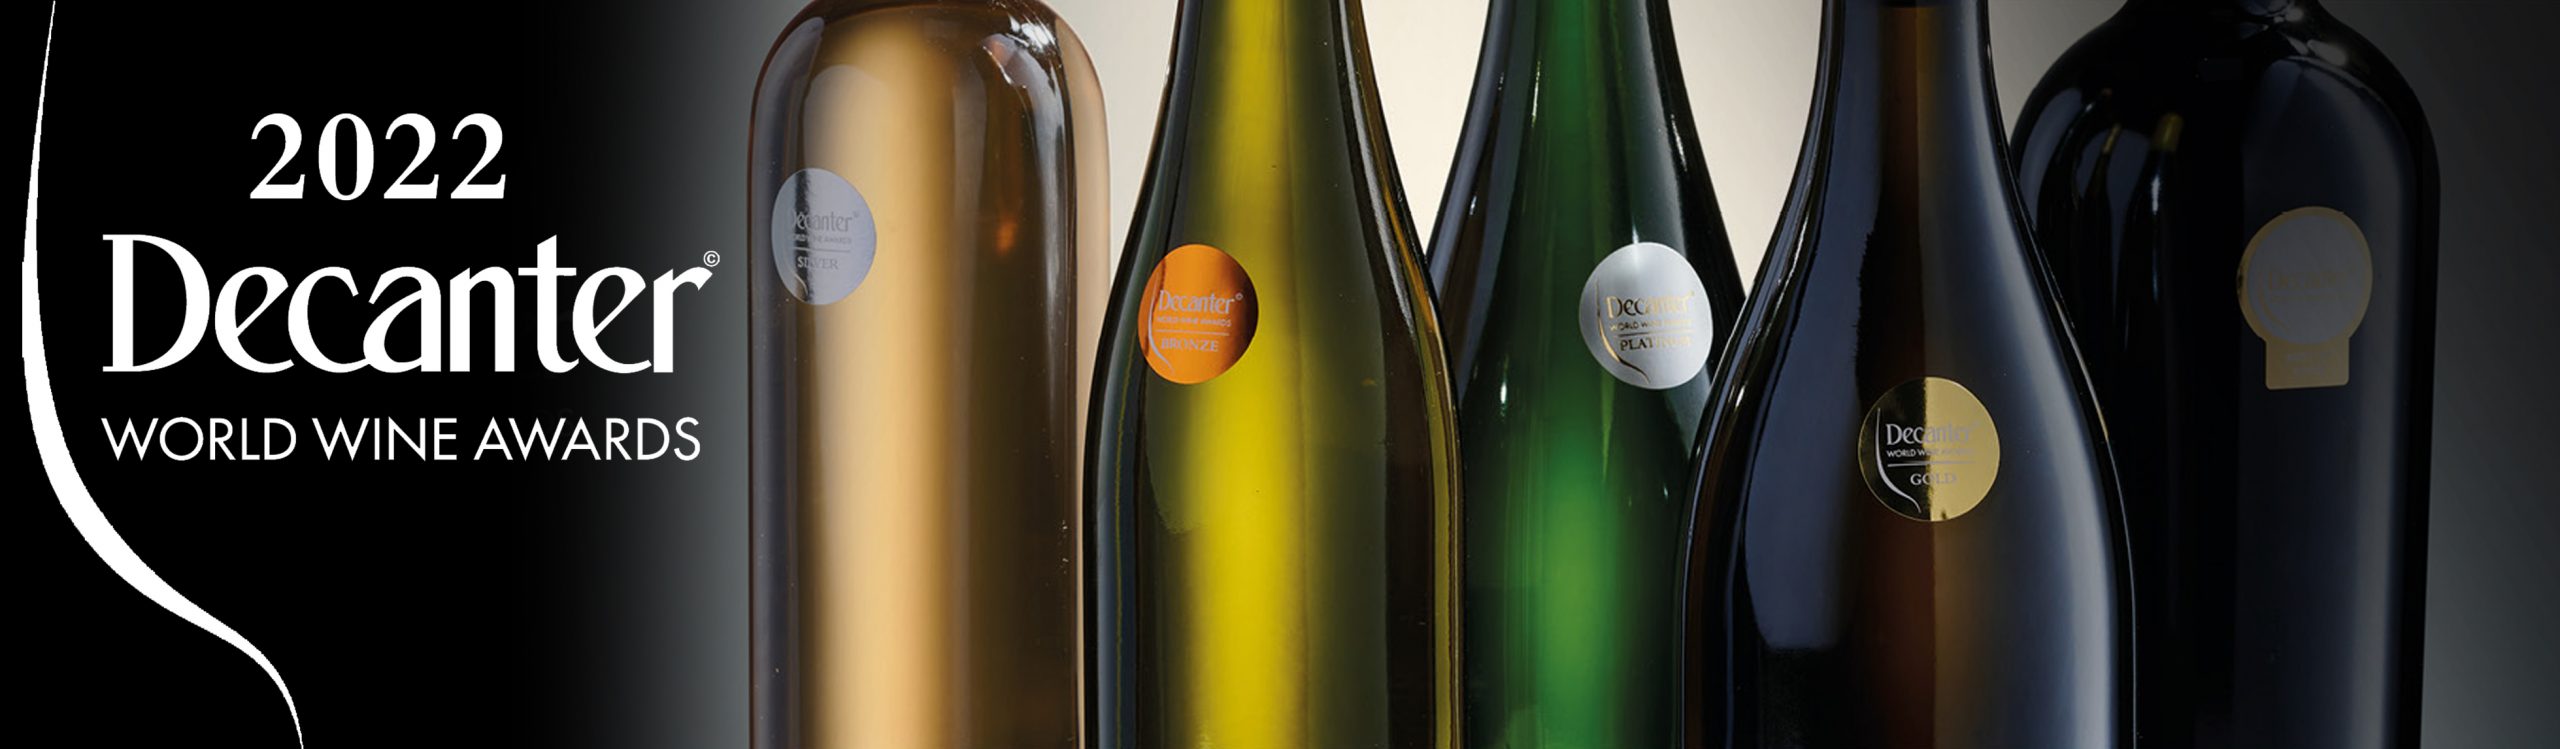 Kwast wijnen vallen in de prijzen bij Decanter World Wine Awards 2022